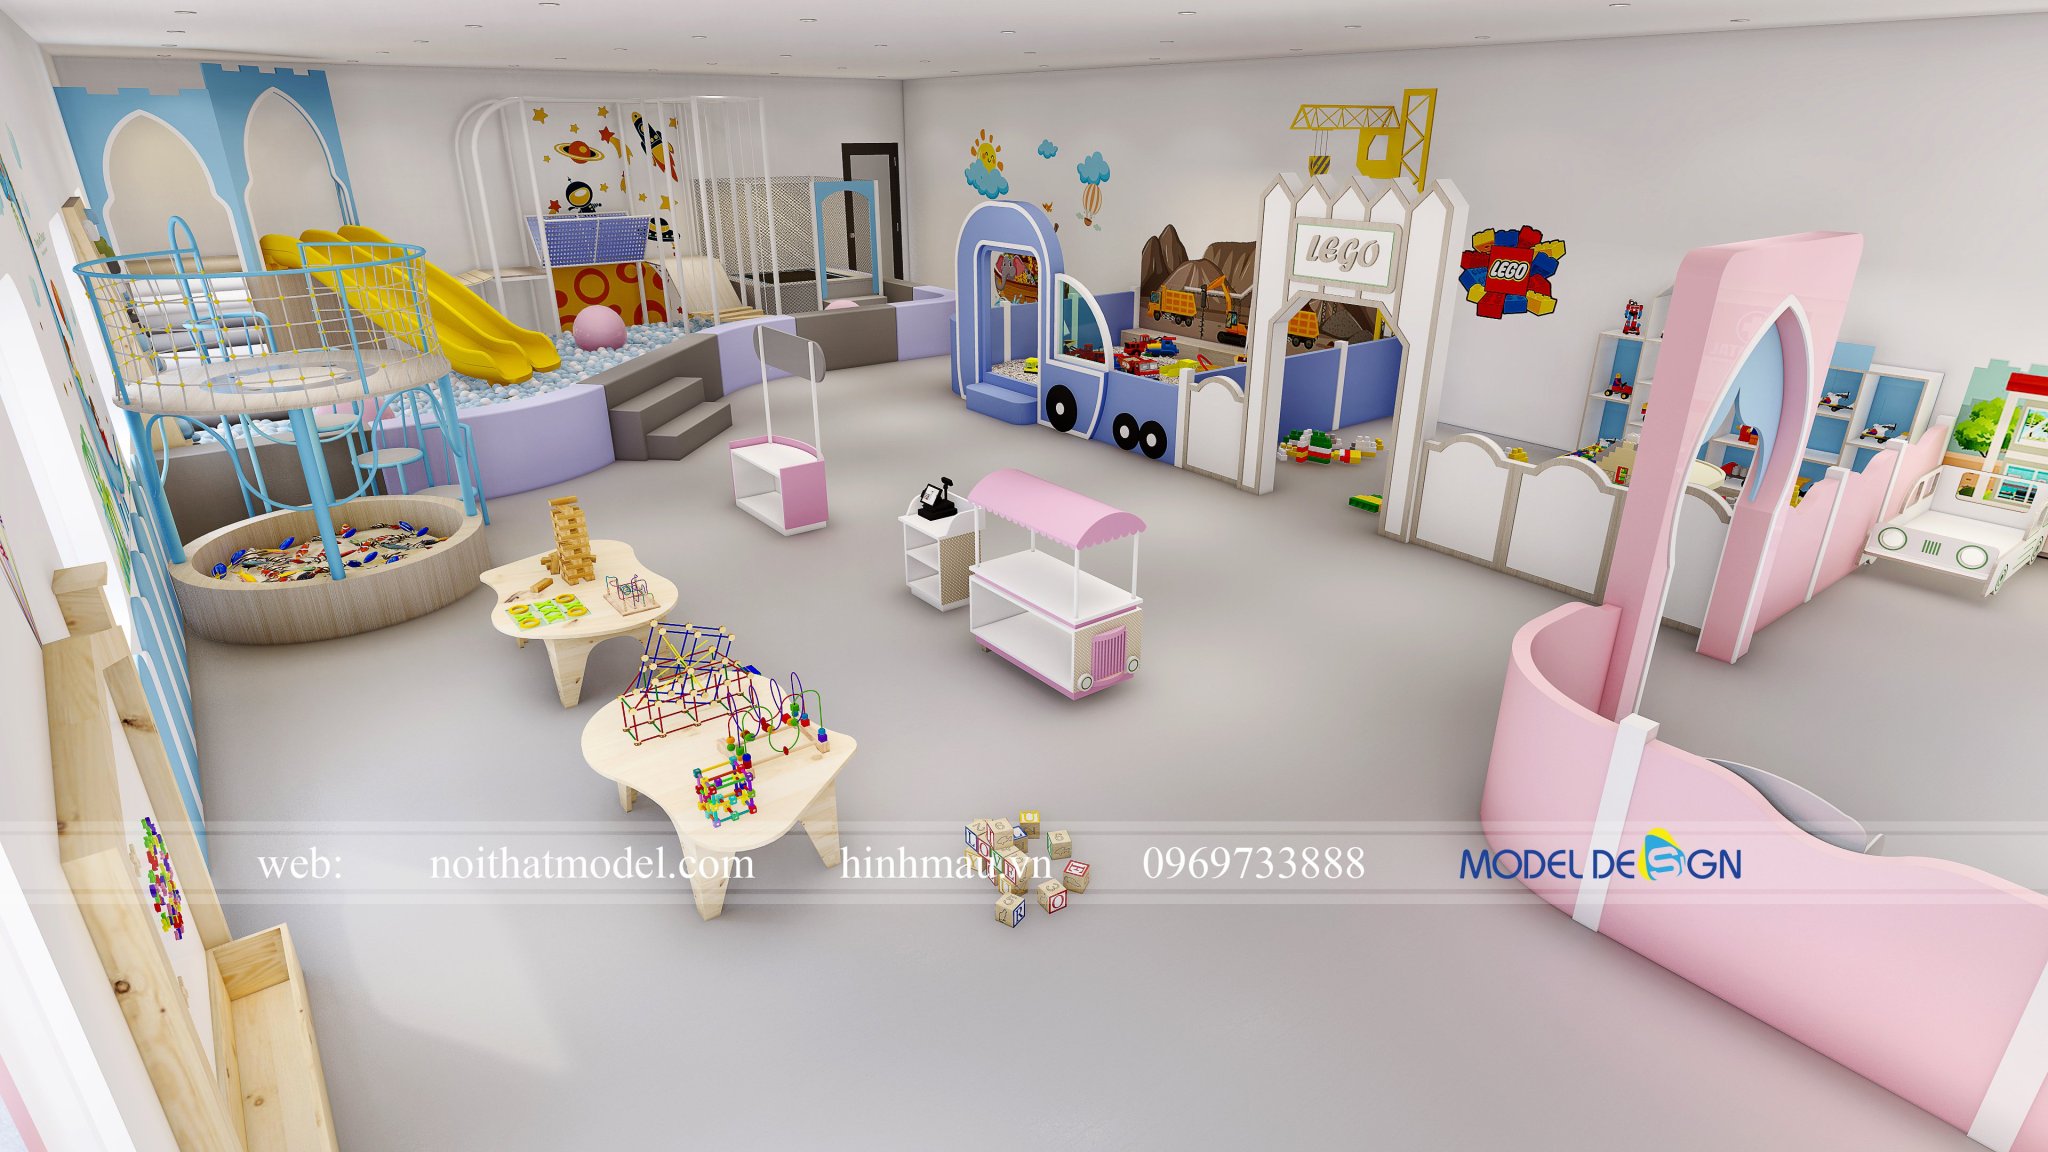 Mẫu thiết kế khu vui chơi trẻ em trong nhà đẹp 2